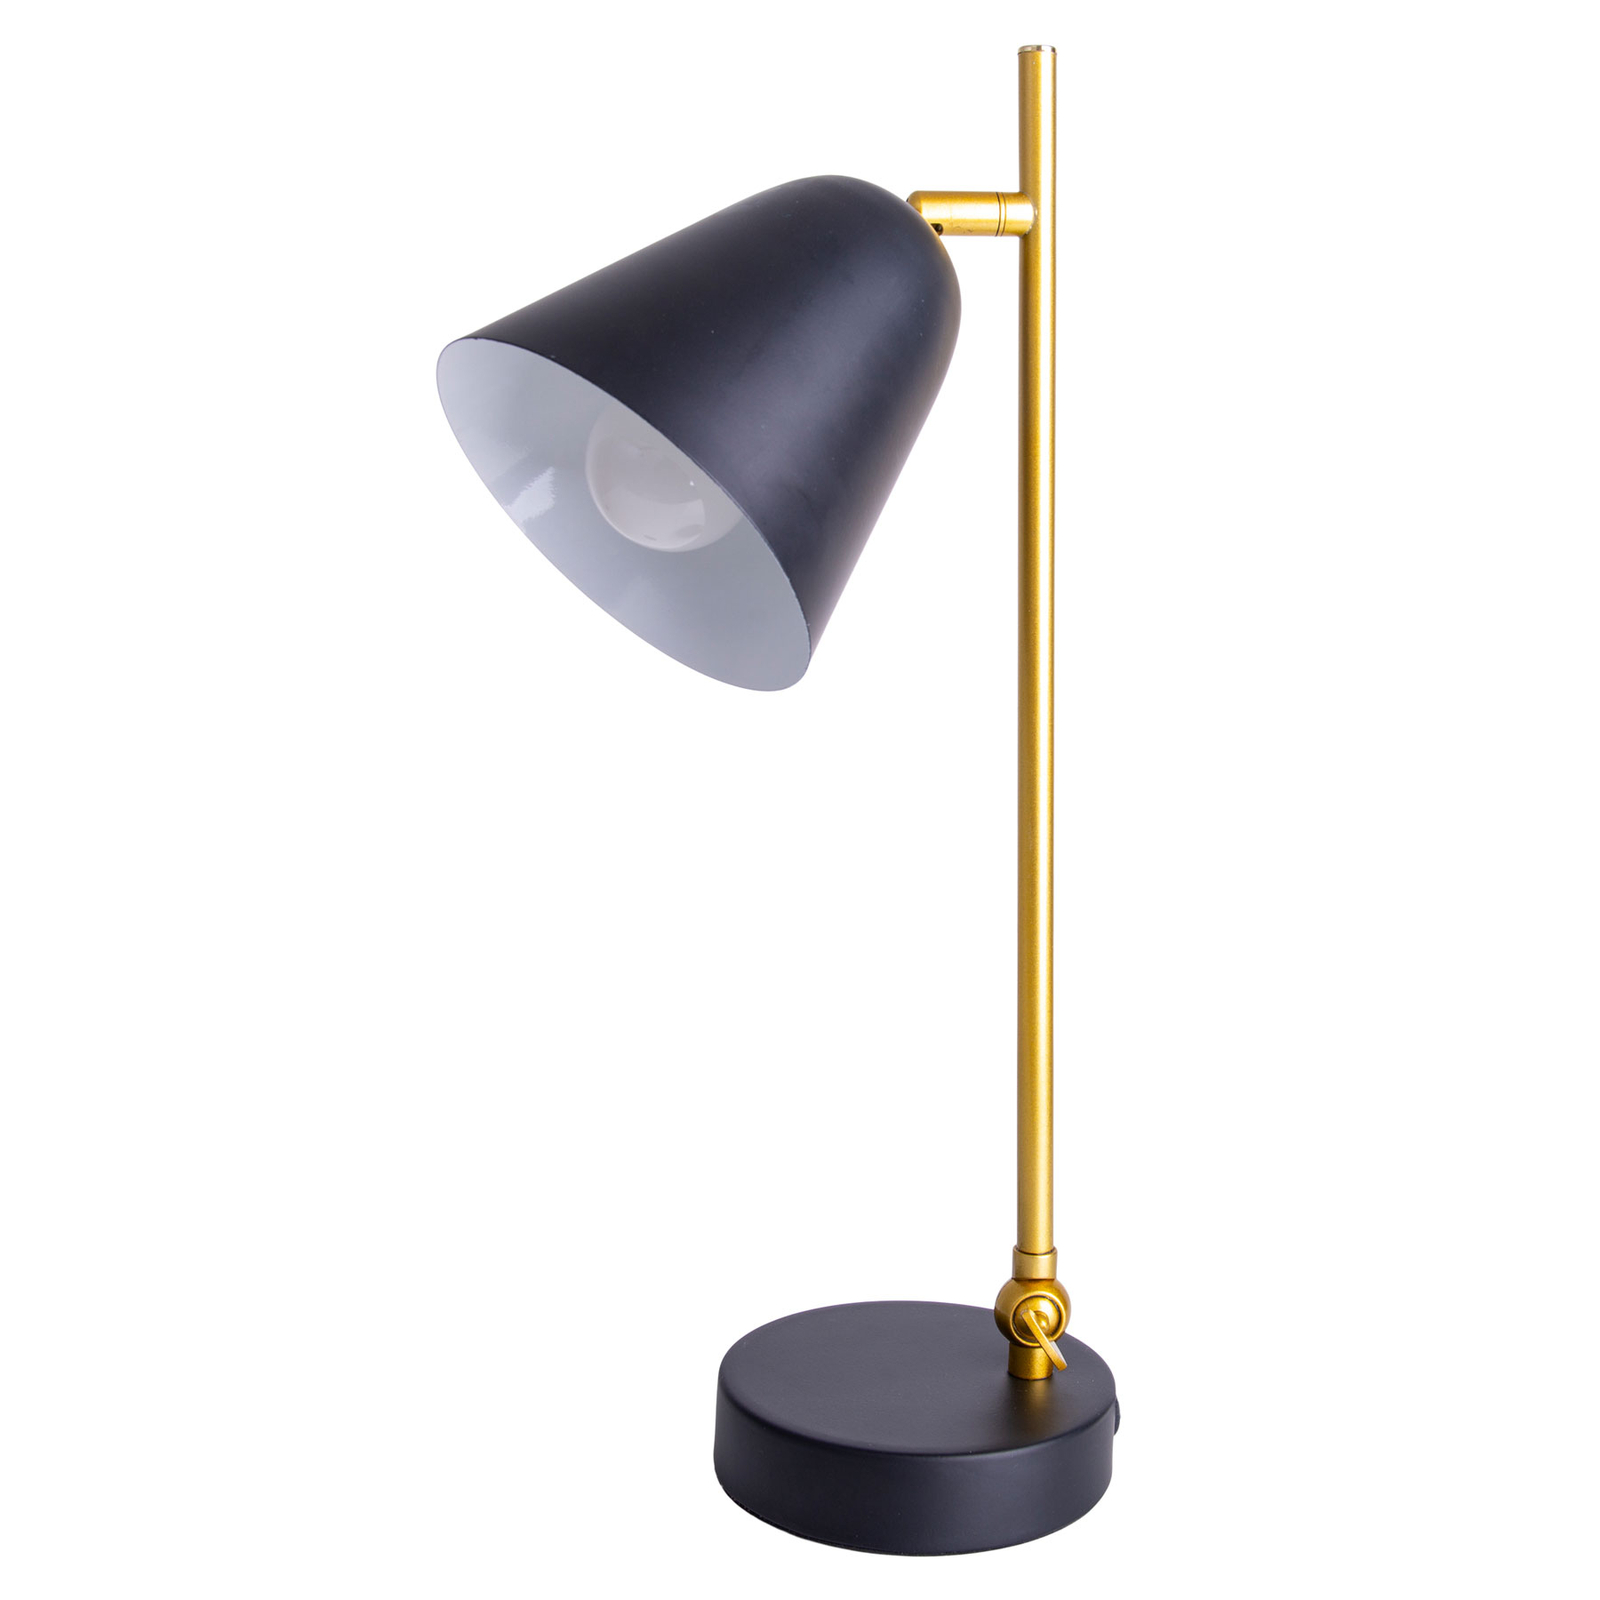 Triton stolna lampa u crnoj i zlatnoj boji